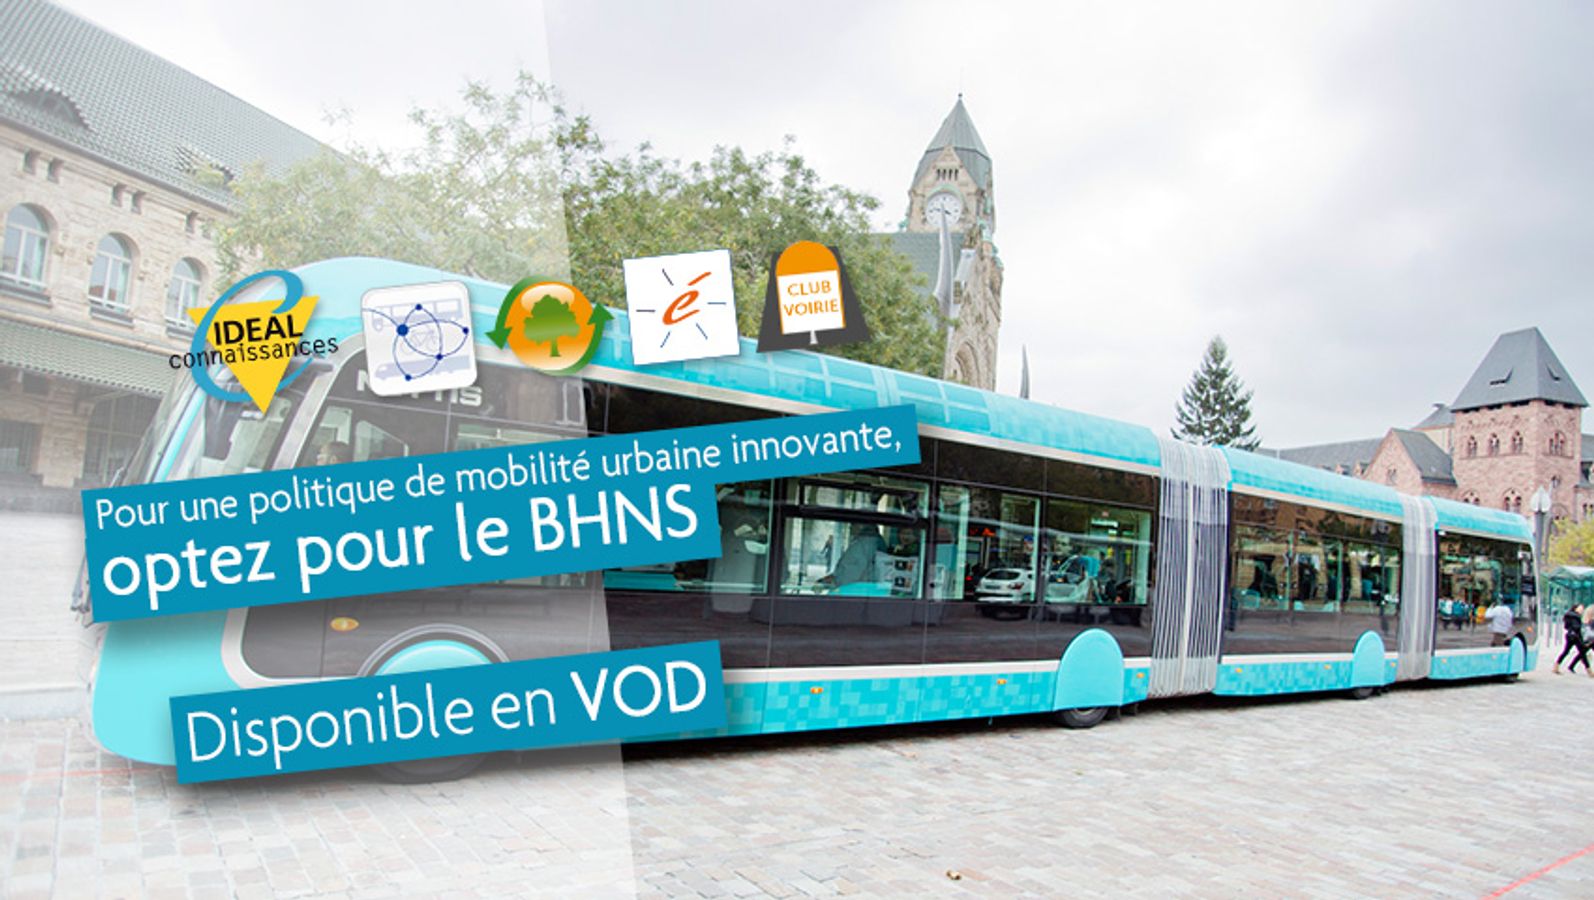 Pour une politique de mobilité urbaine innovante, optez pour le BHNS !